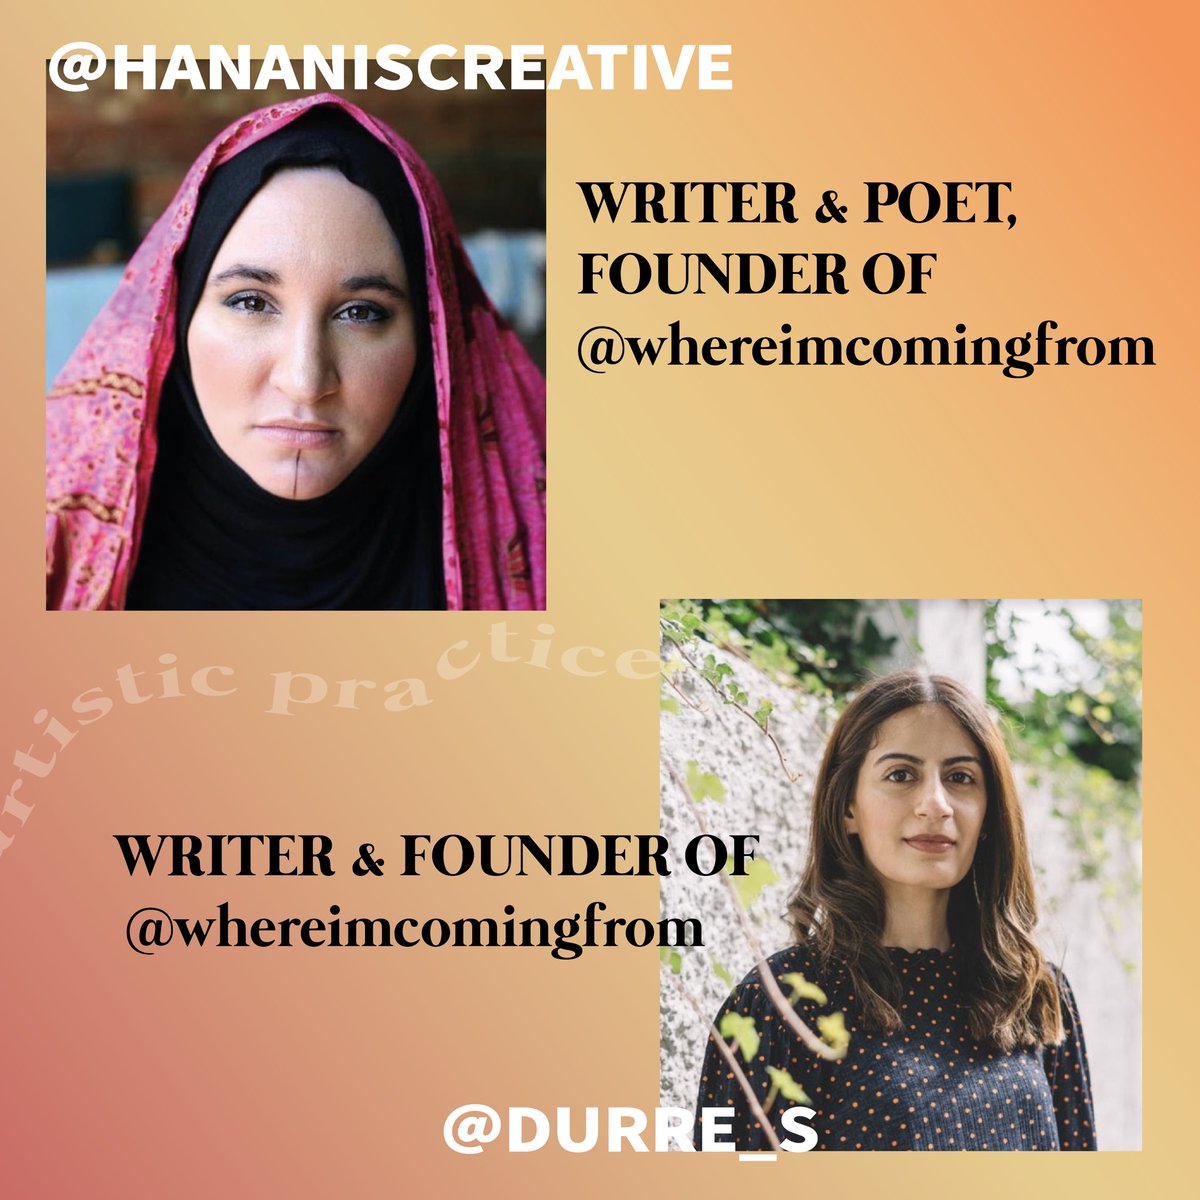 .  @Hananiscreative - Writer & Poet, founder of  @WICFCardiff  @Durre_Shahwar - Writer & founder of  @WICFCardiff